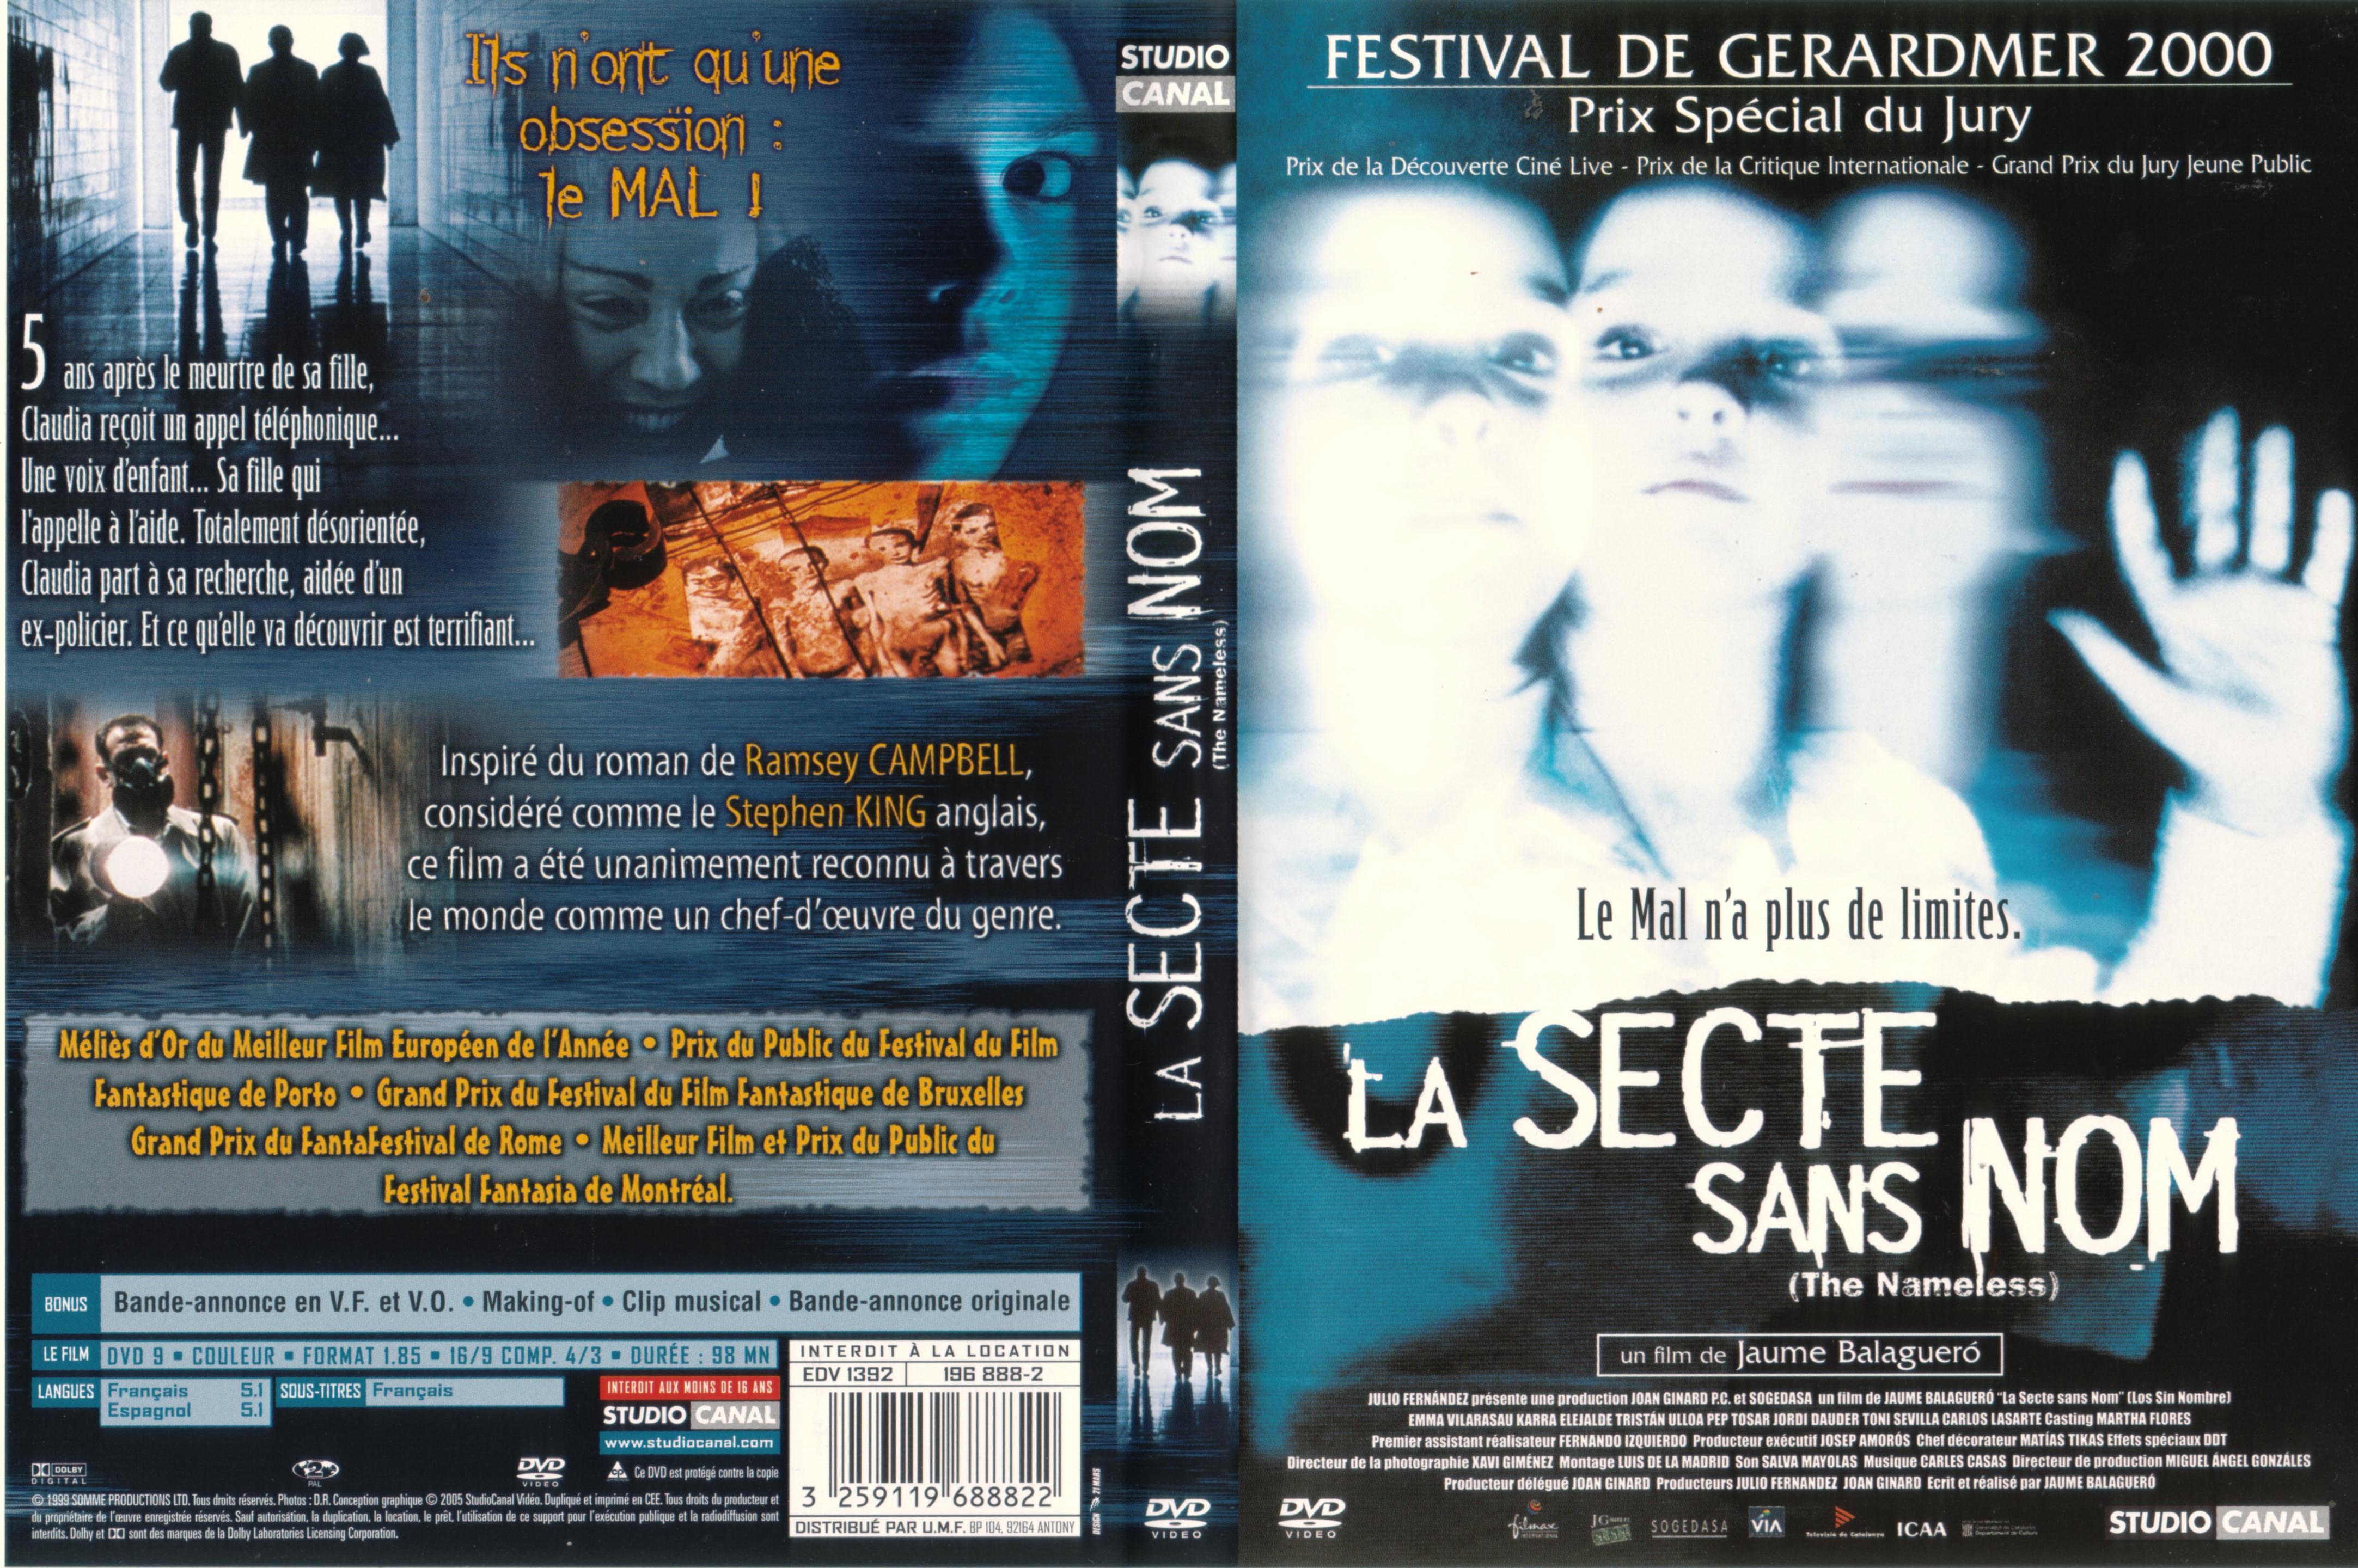 Jaquette DVD La secte sans nom v2